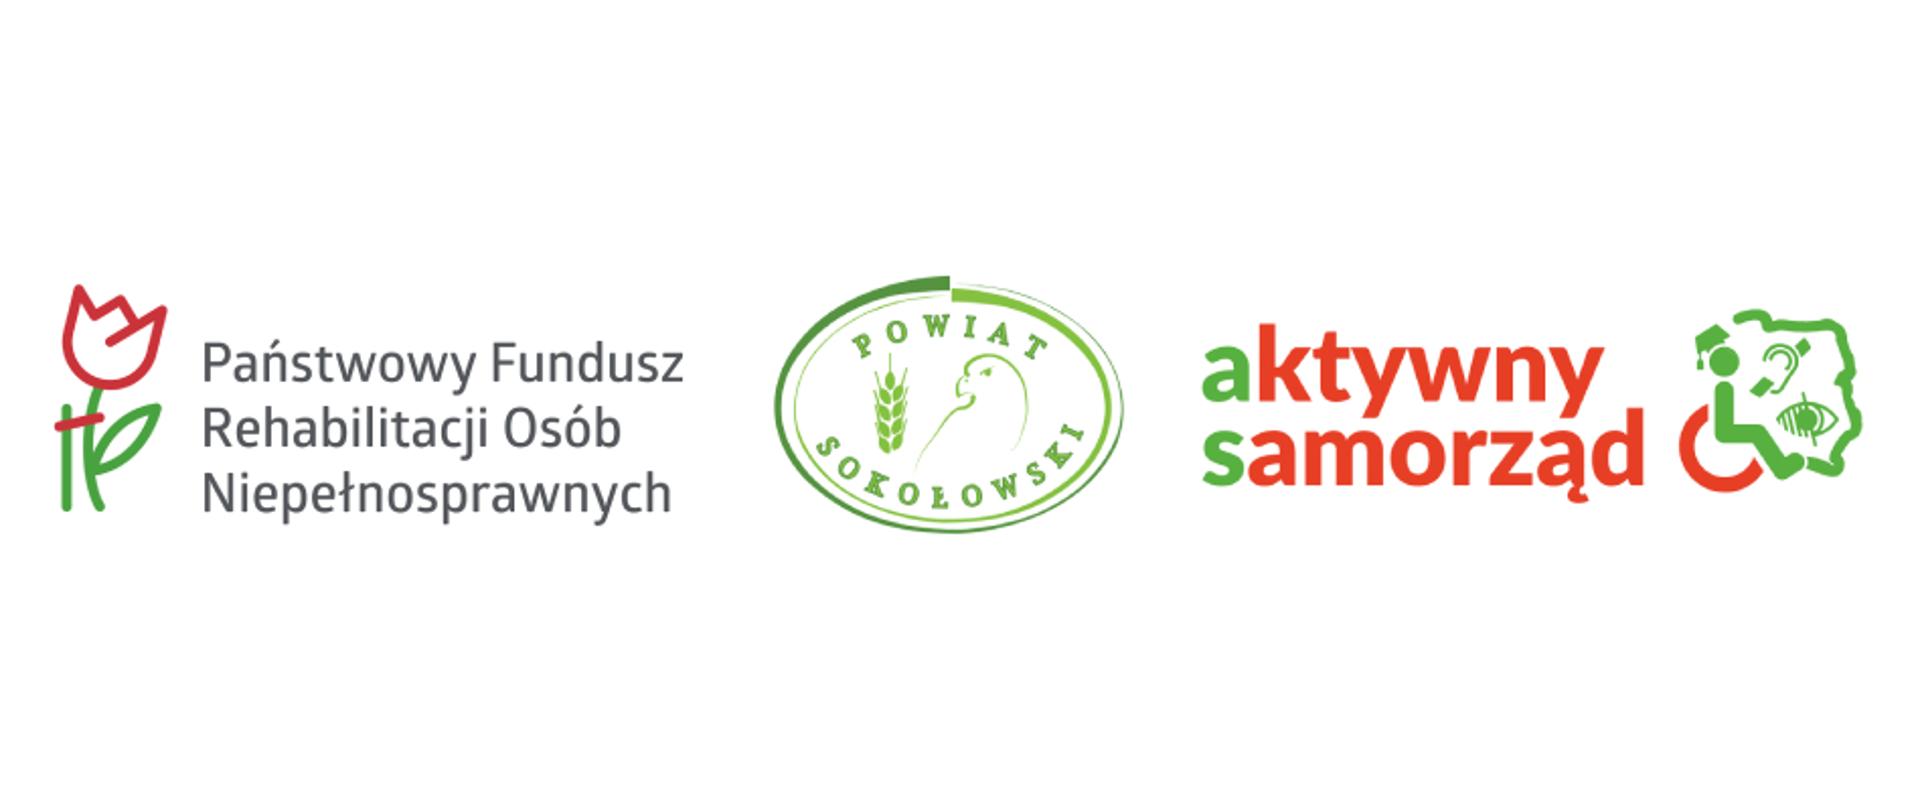 Logotypy Programu, tj. od lewej logo Państwowego Funduszu Osób Niepełnosprawnych, logo Powiatu Sokołowskiego, Logo Aktywny Samorząd 